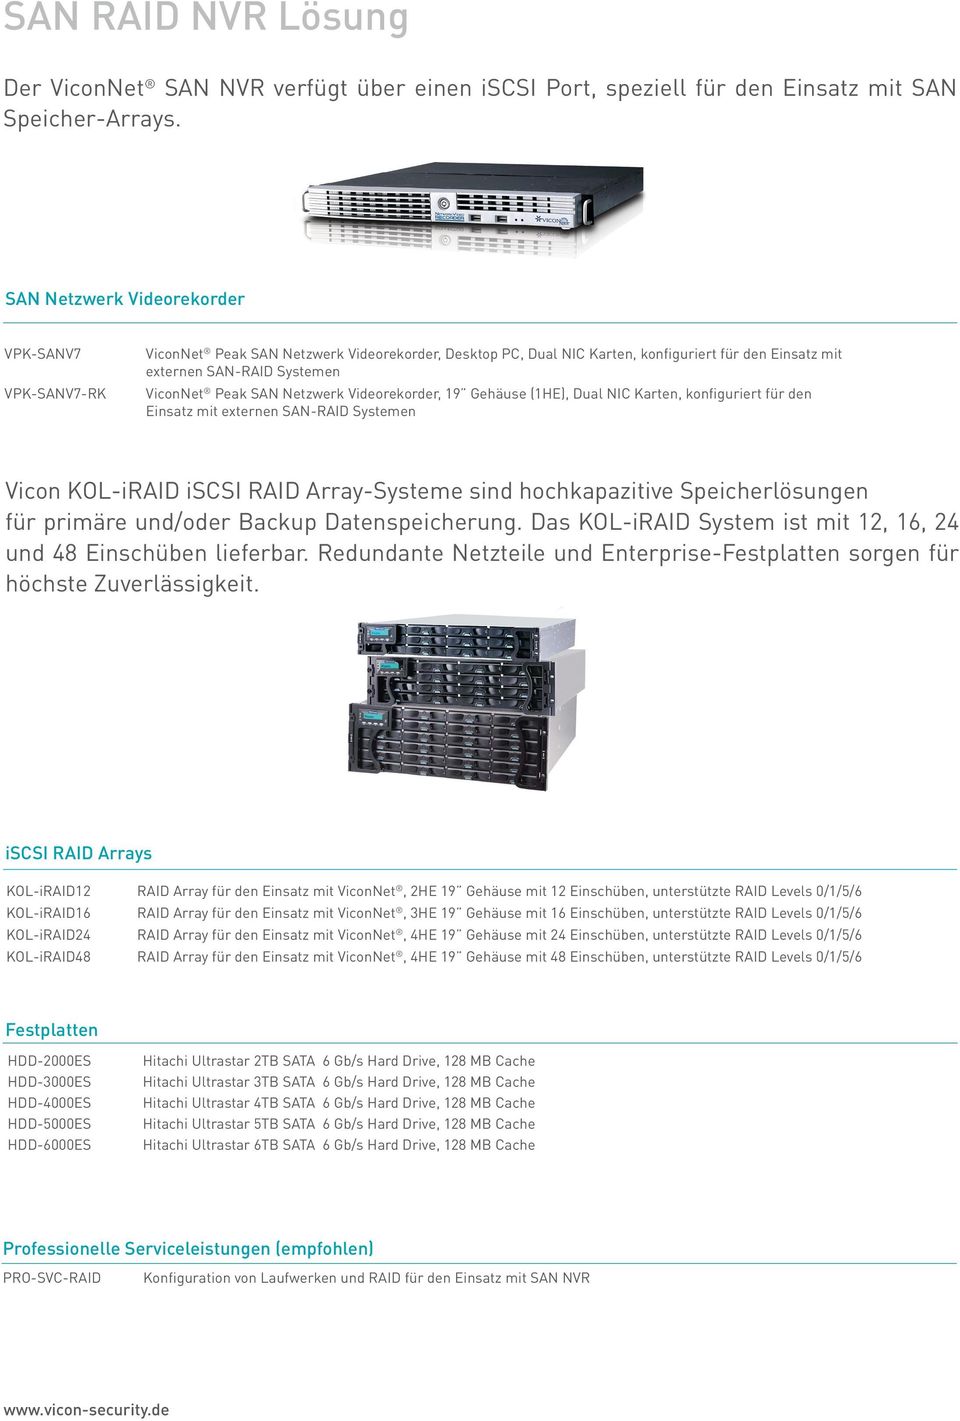 Netzwerk Videorekorder, 19 Gehäuse (1HE), Dual NIC Karten, konfiguriert für den Einsatz mit externen SAN-RAID Systemen Vicon KOL-iRAID iscsi RAID Array-Systeme sind hochkapazitive Speicherlösungen